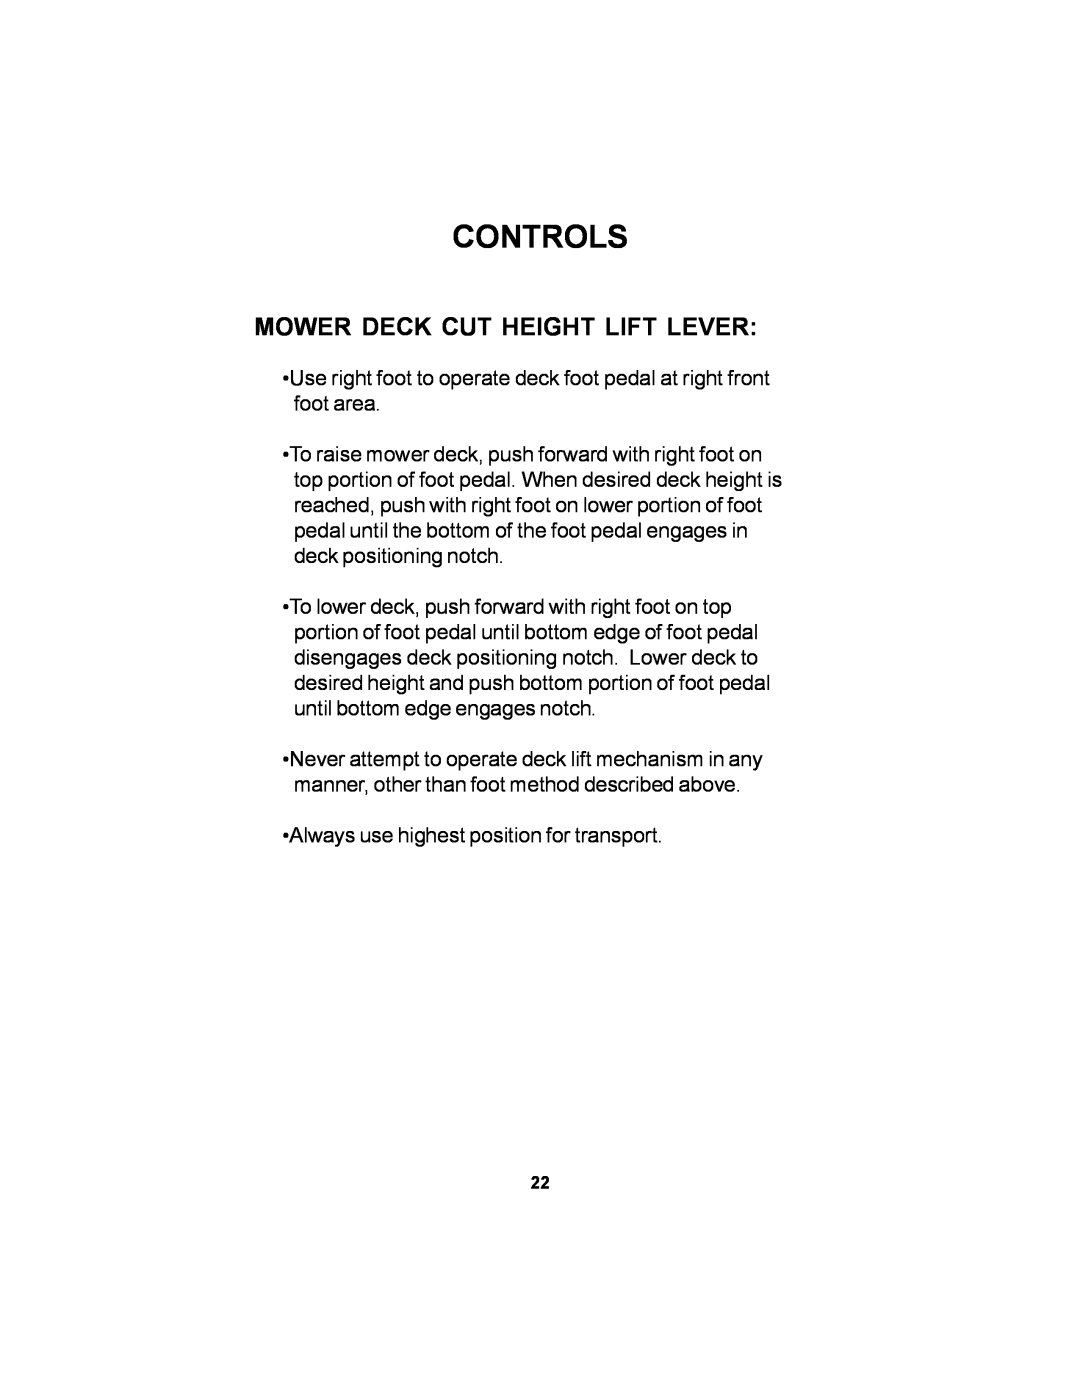 Dixon 36 manual Mower Deck Cut Height Lift Lever, Controls 